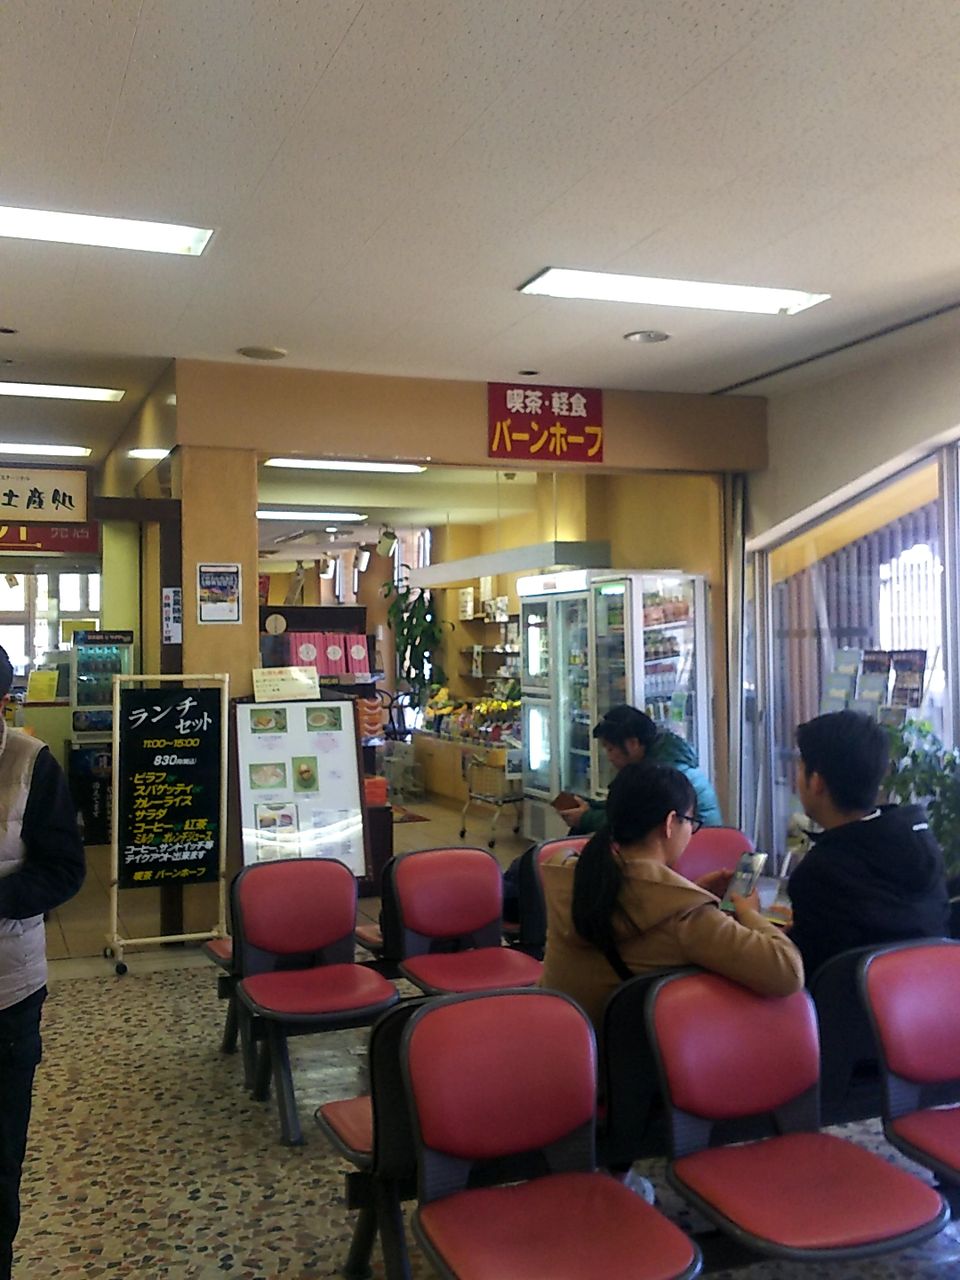 喫茶軽食 バーンホーフ 草津温泉 地元民との融合なのか何なのか でも間違いなくバス待ちのお客さん用だなと思い直す シャバゾウblog